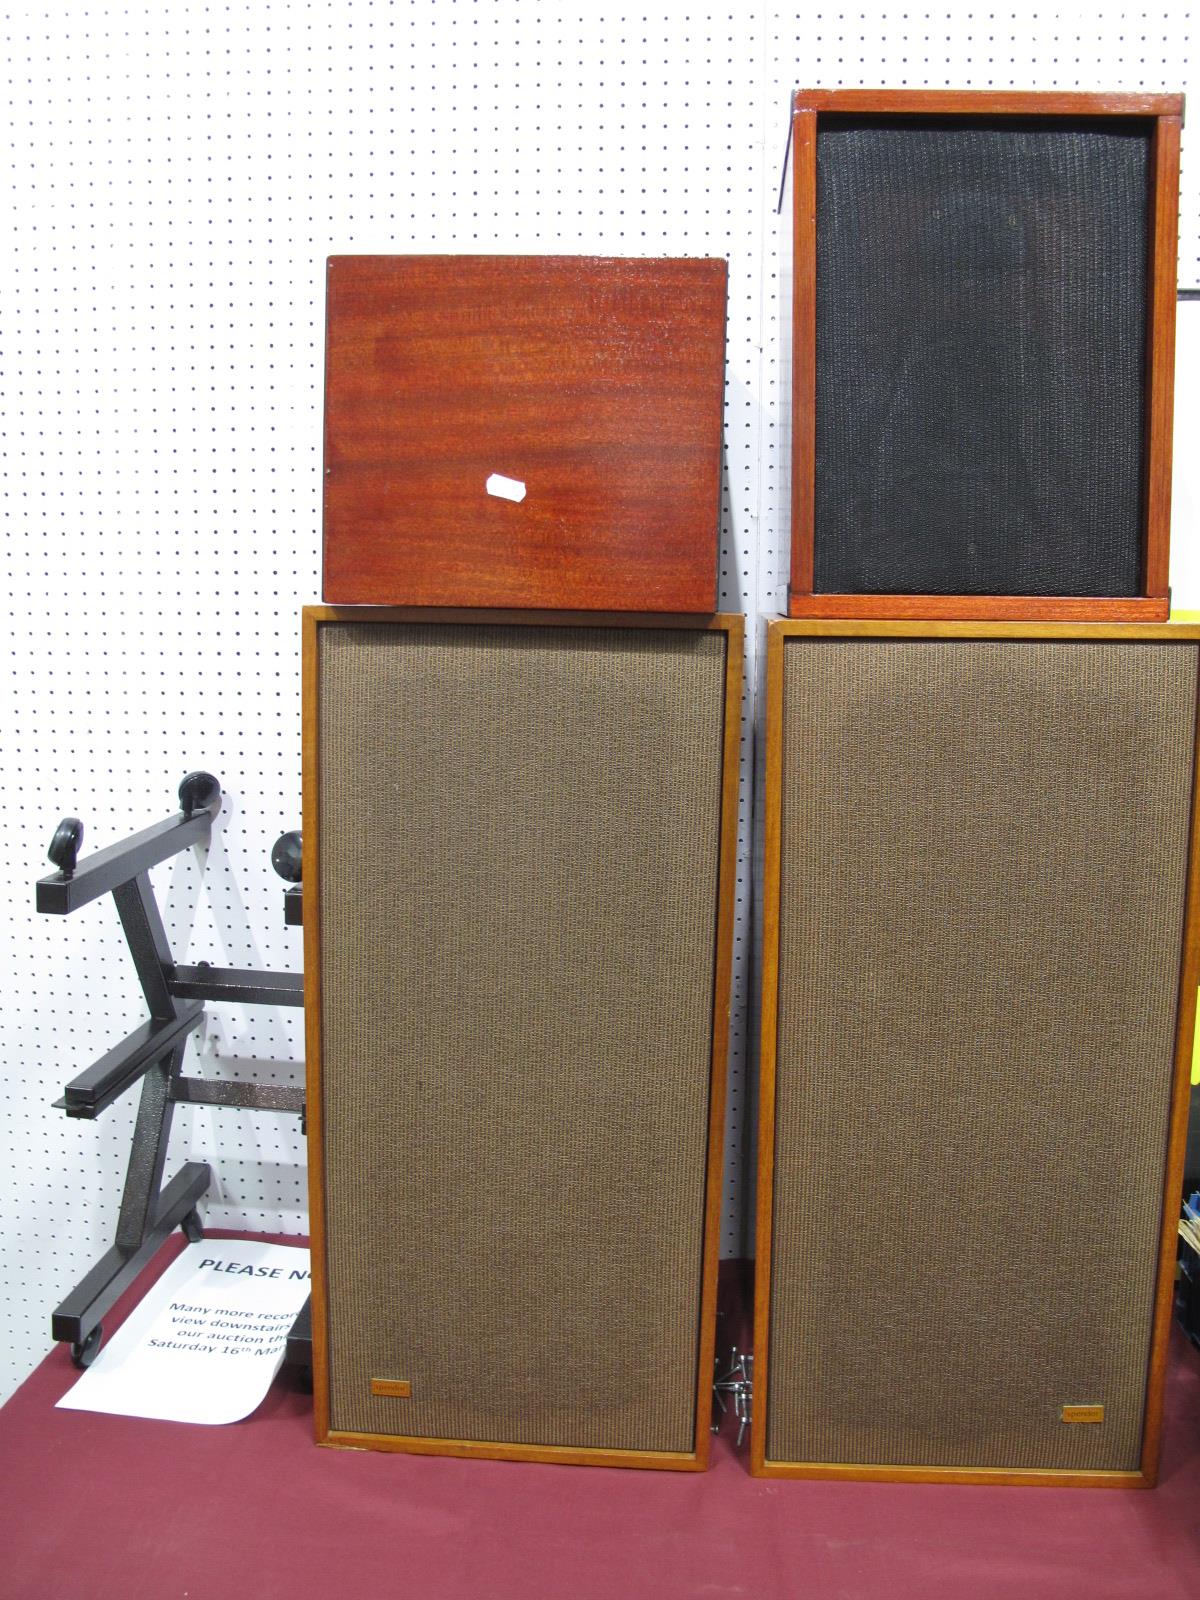 A Pair of Spendor Type BC1 Loudspeakers, serial numbers 23531/23532, teak cased mounted on mobile